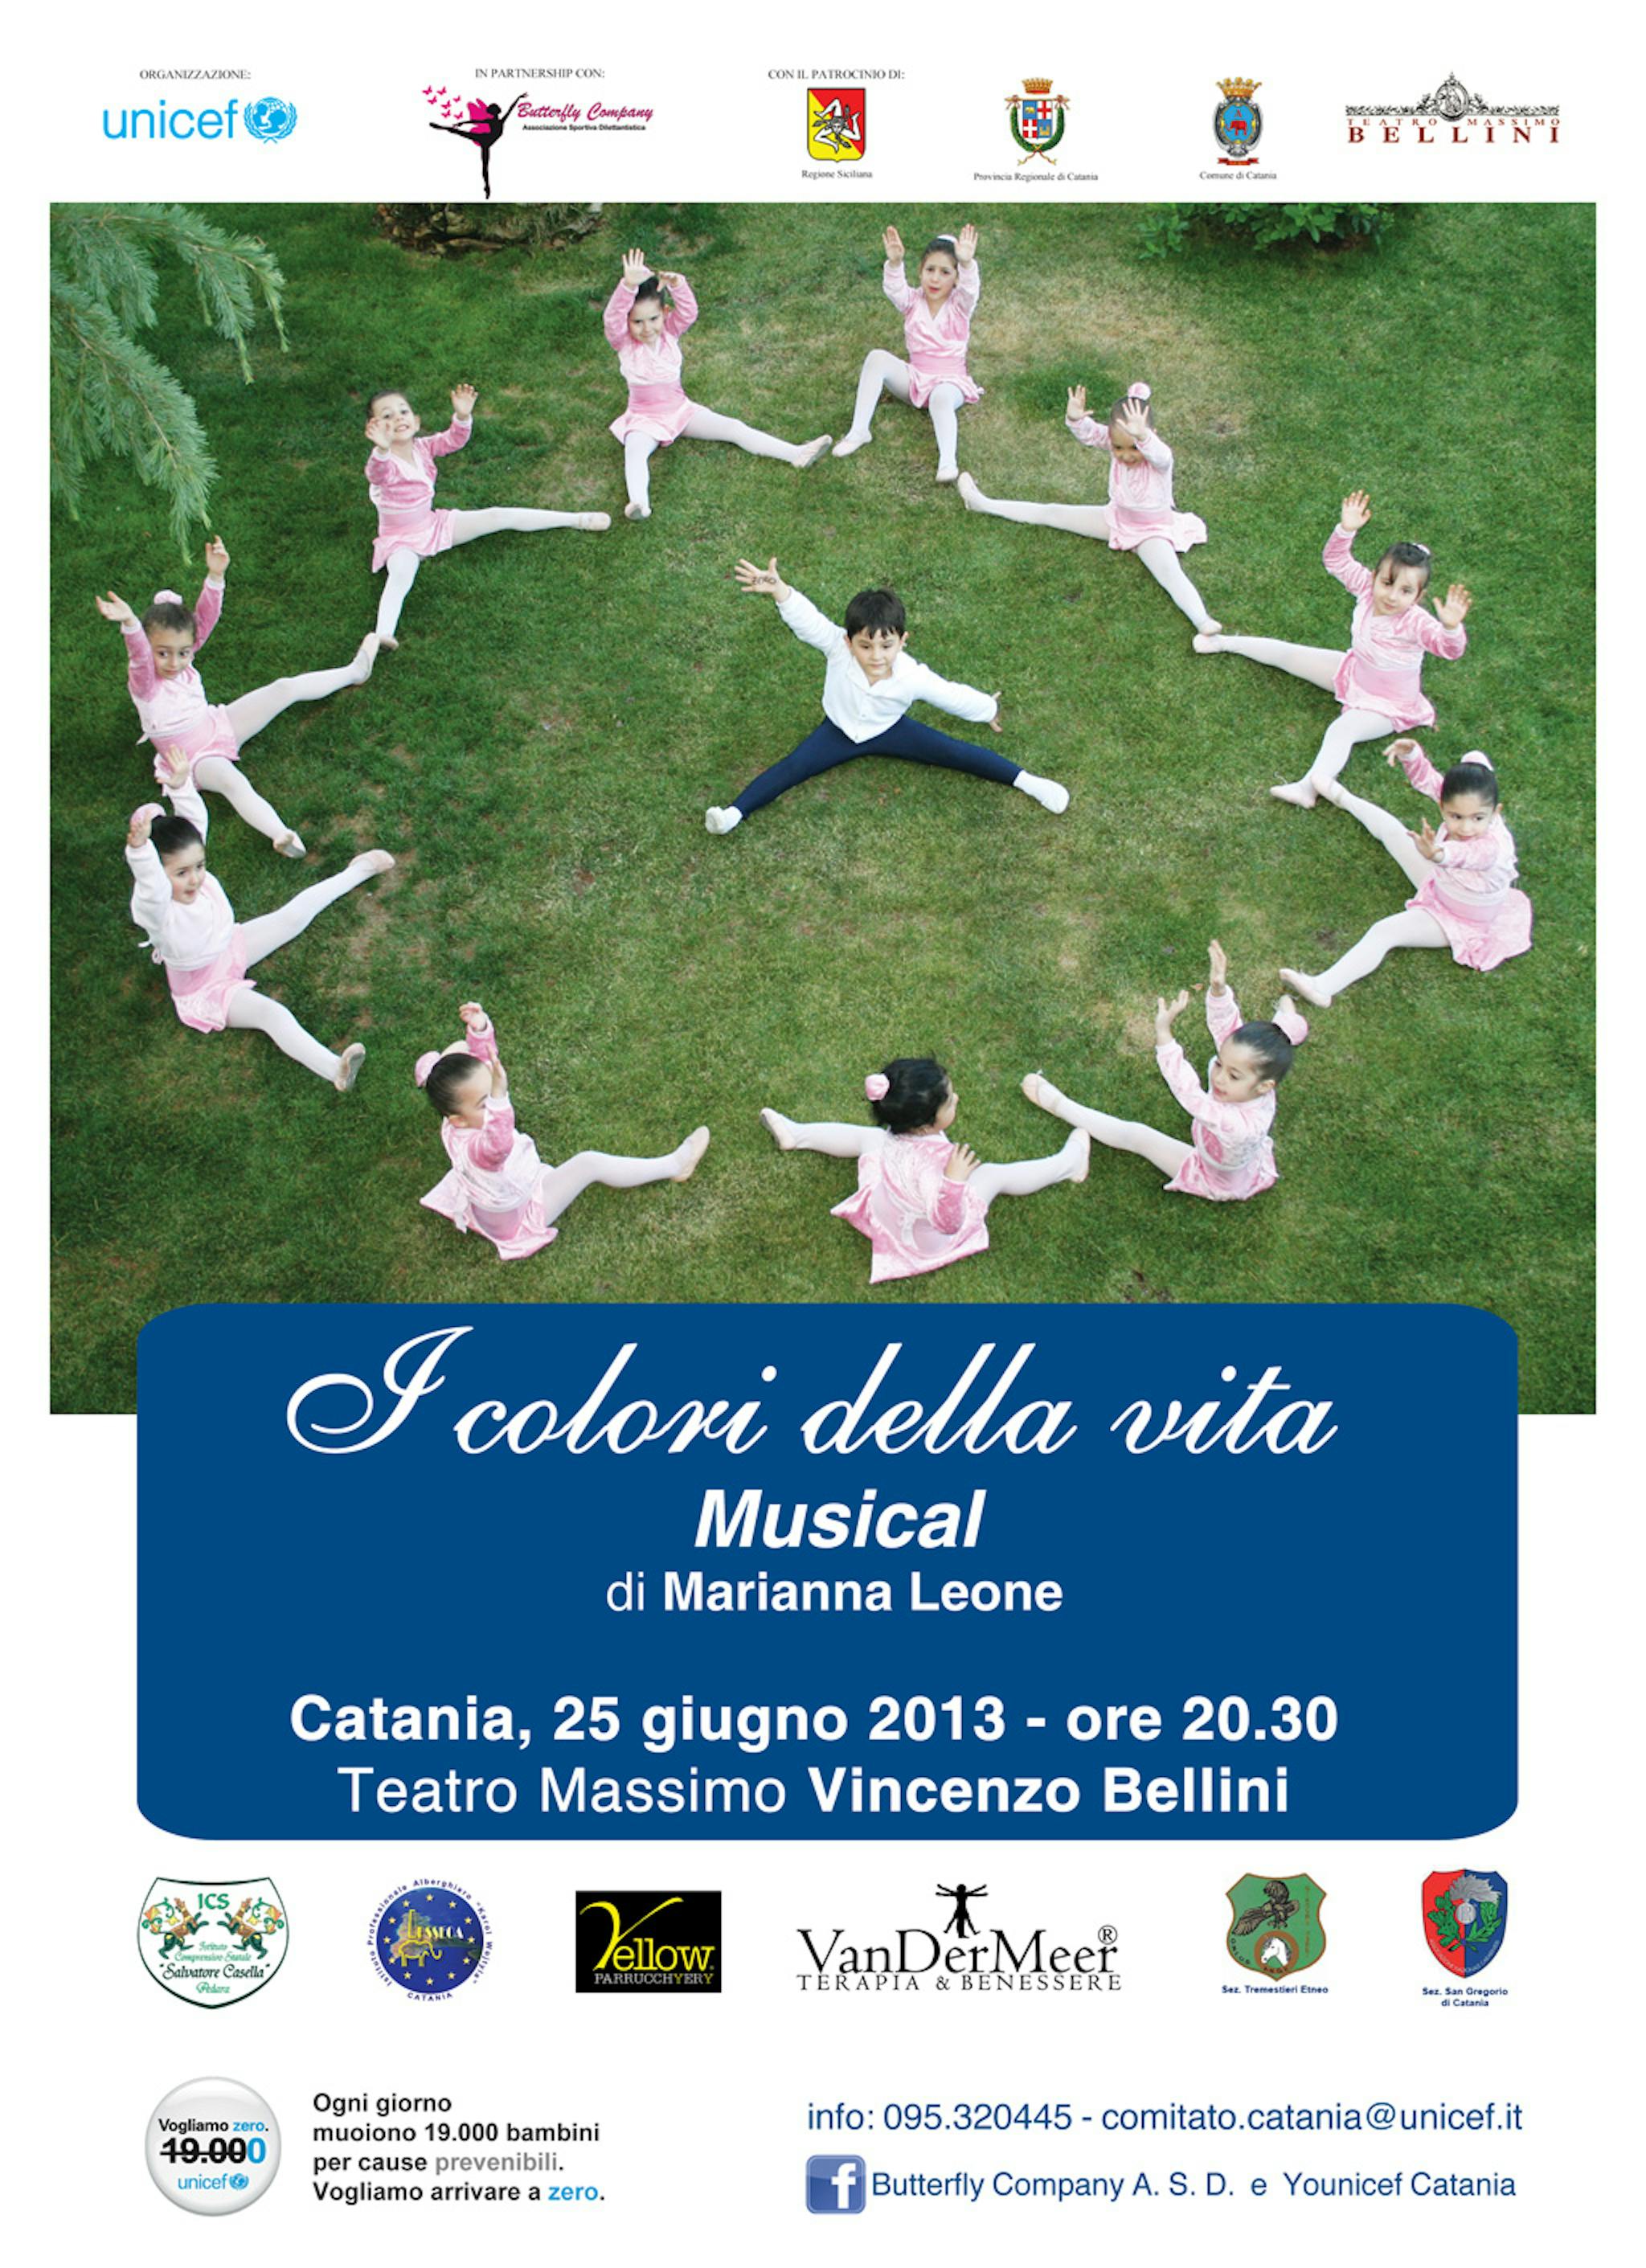 La Convenzione dell'infanzia in scena al Teatro Massimo di Catania